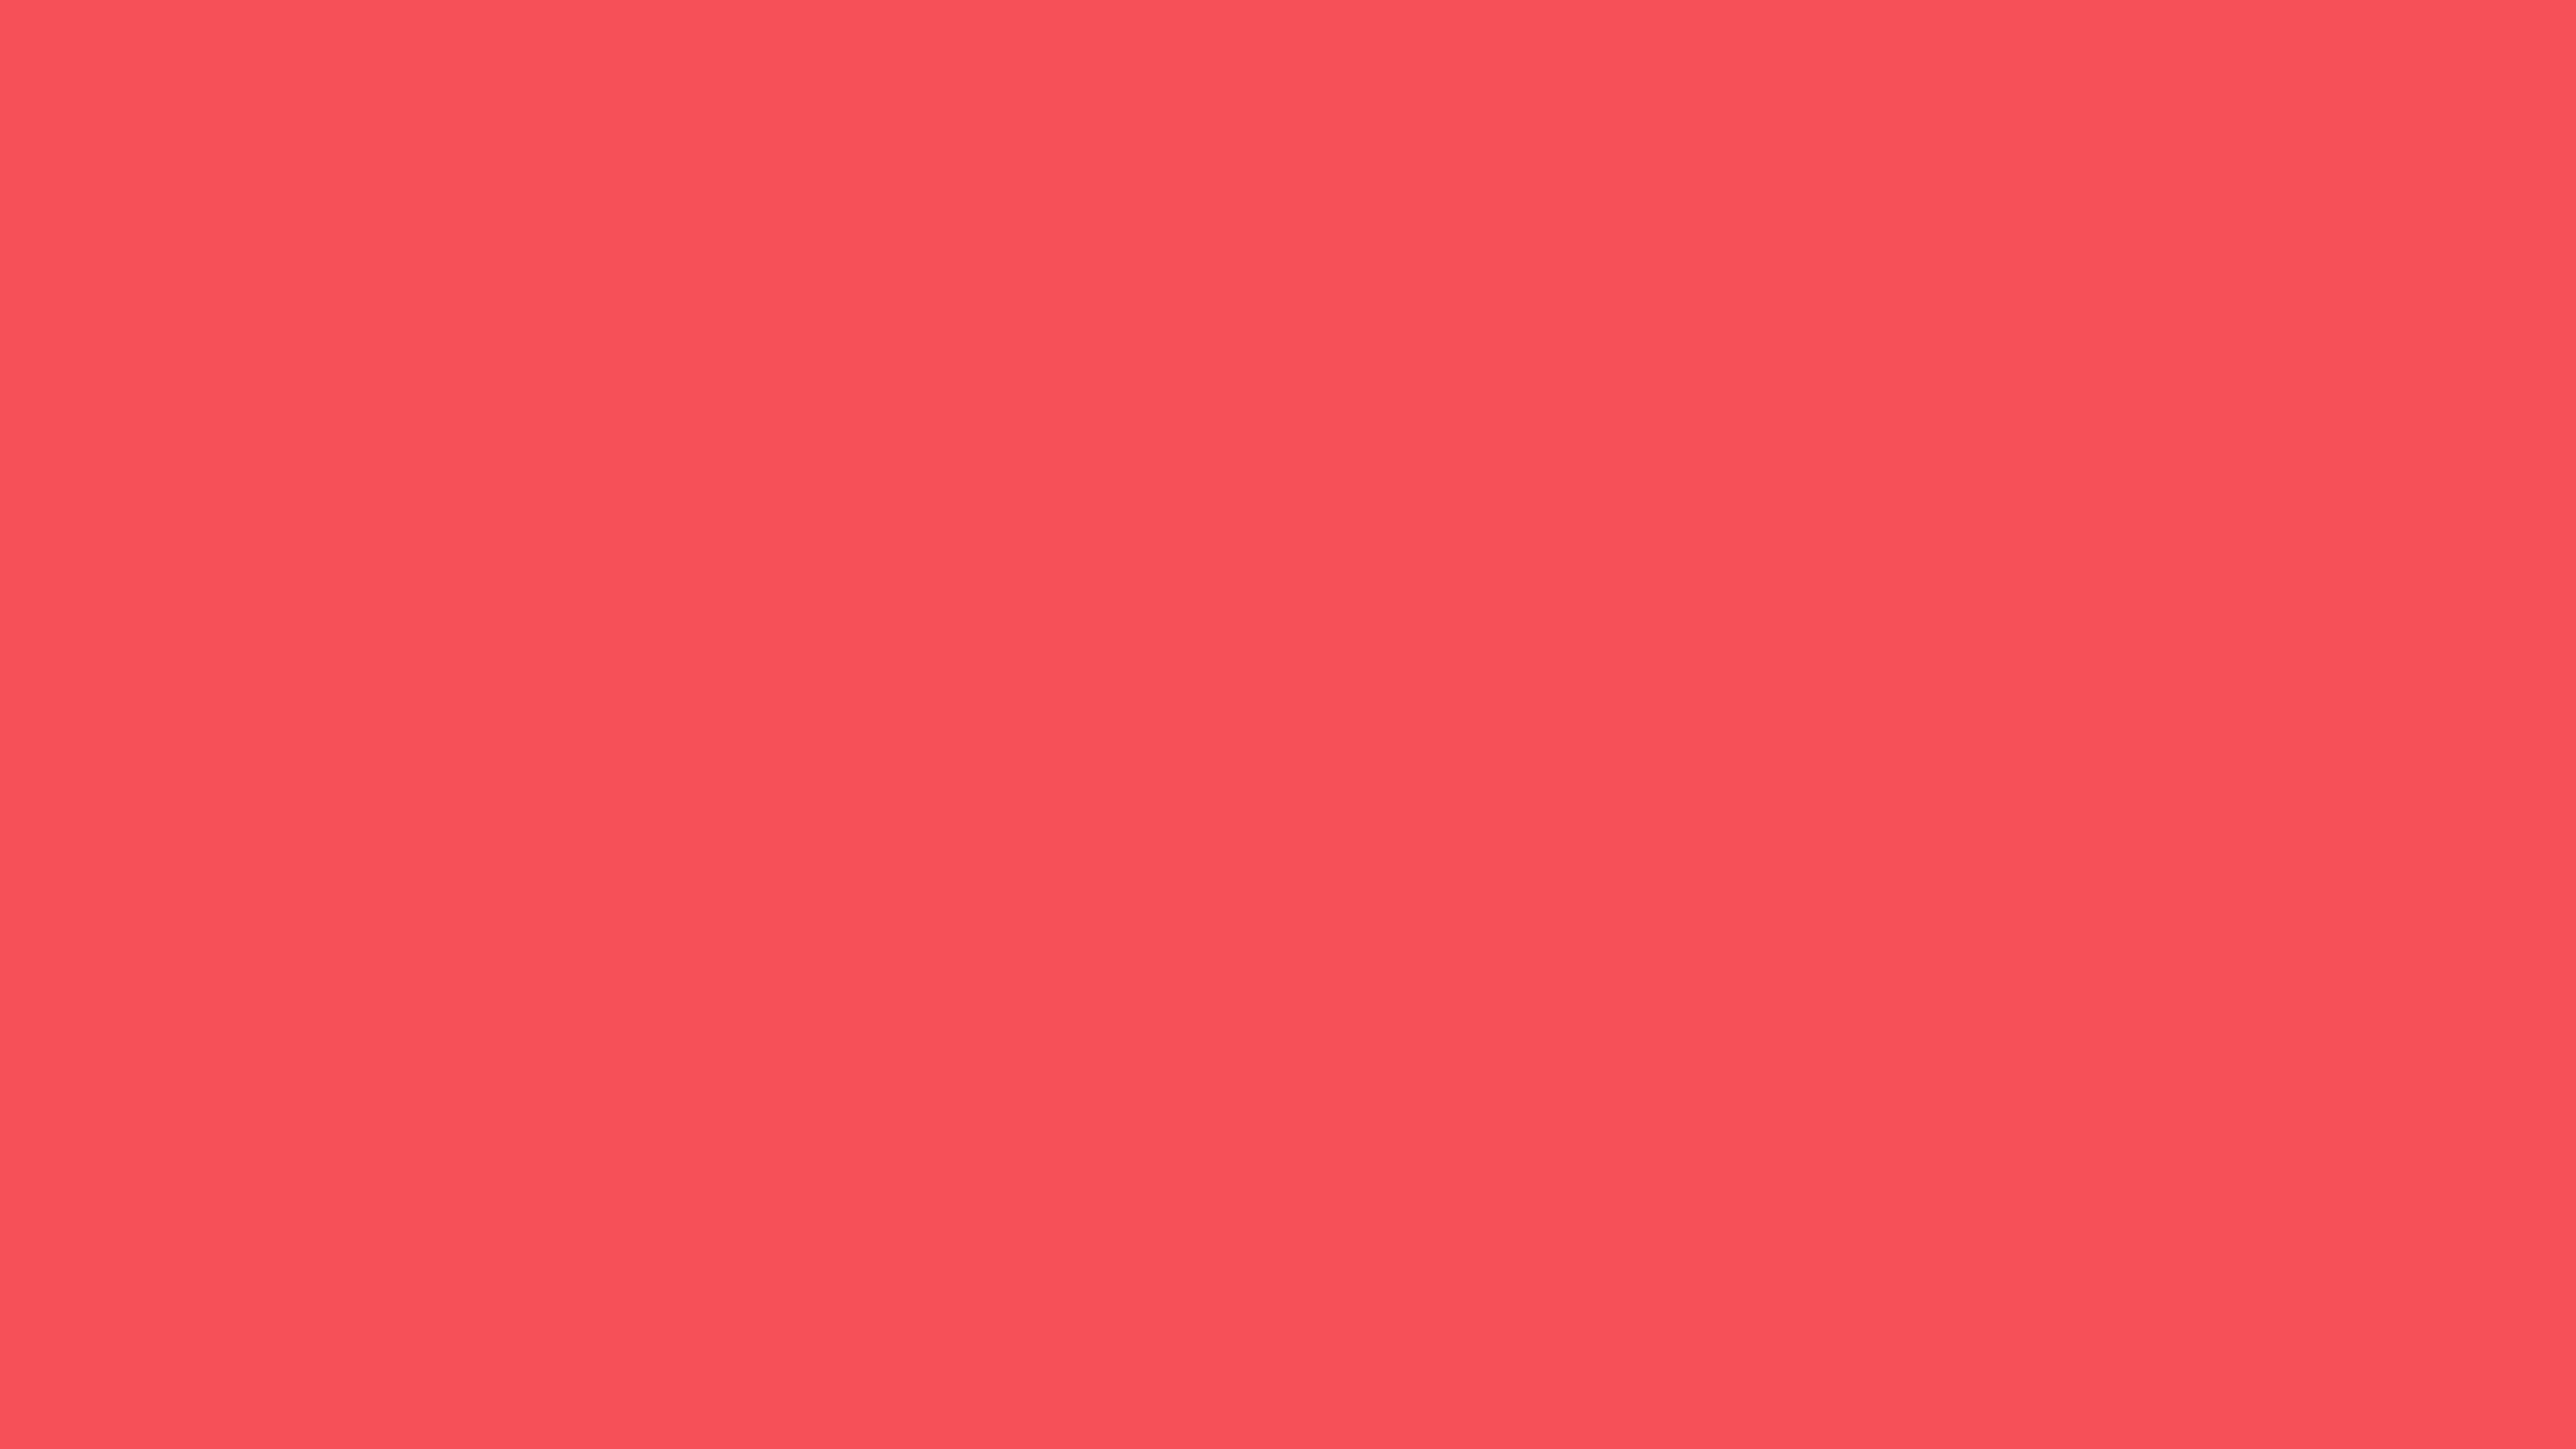 Begrænsninger Allerede Efternavn Pantone Red 032 U Color | Hex color Code #F65058 information | Hsl | Rgb |  Pantone